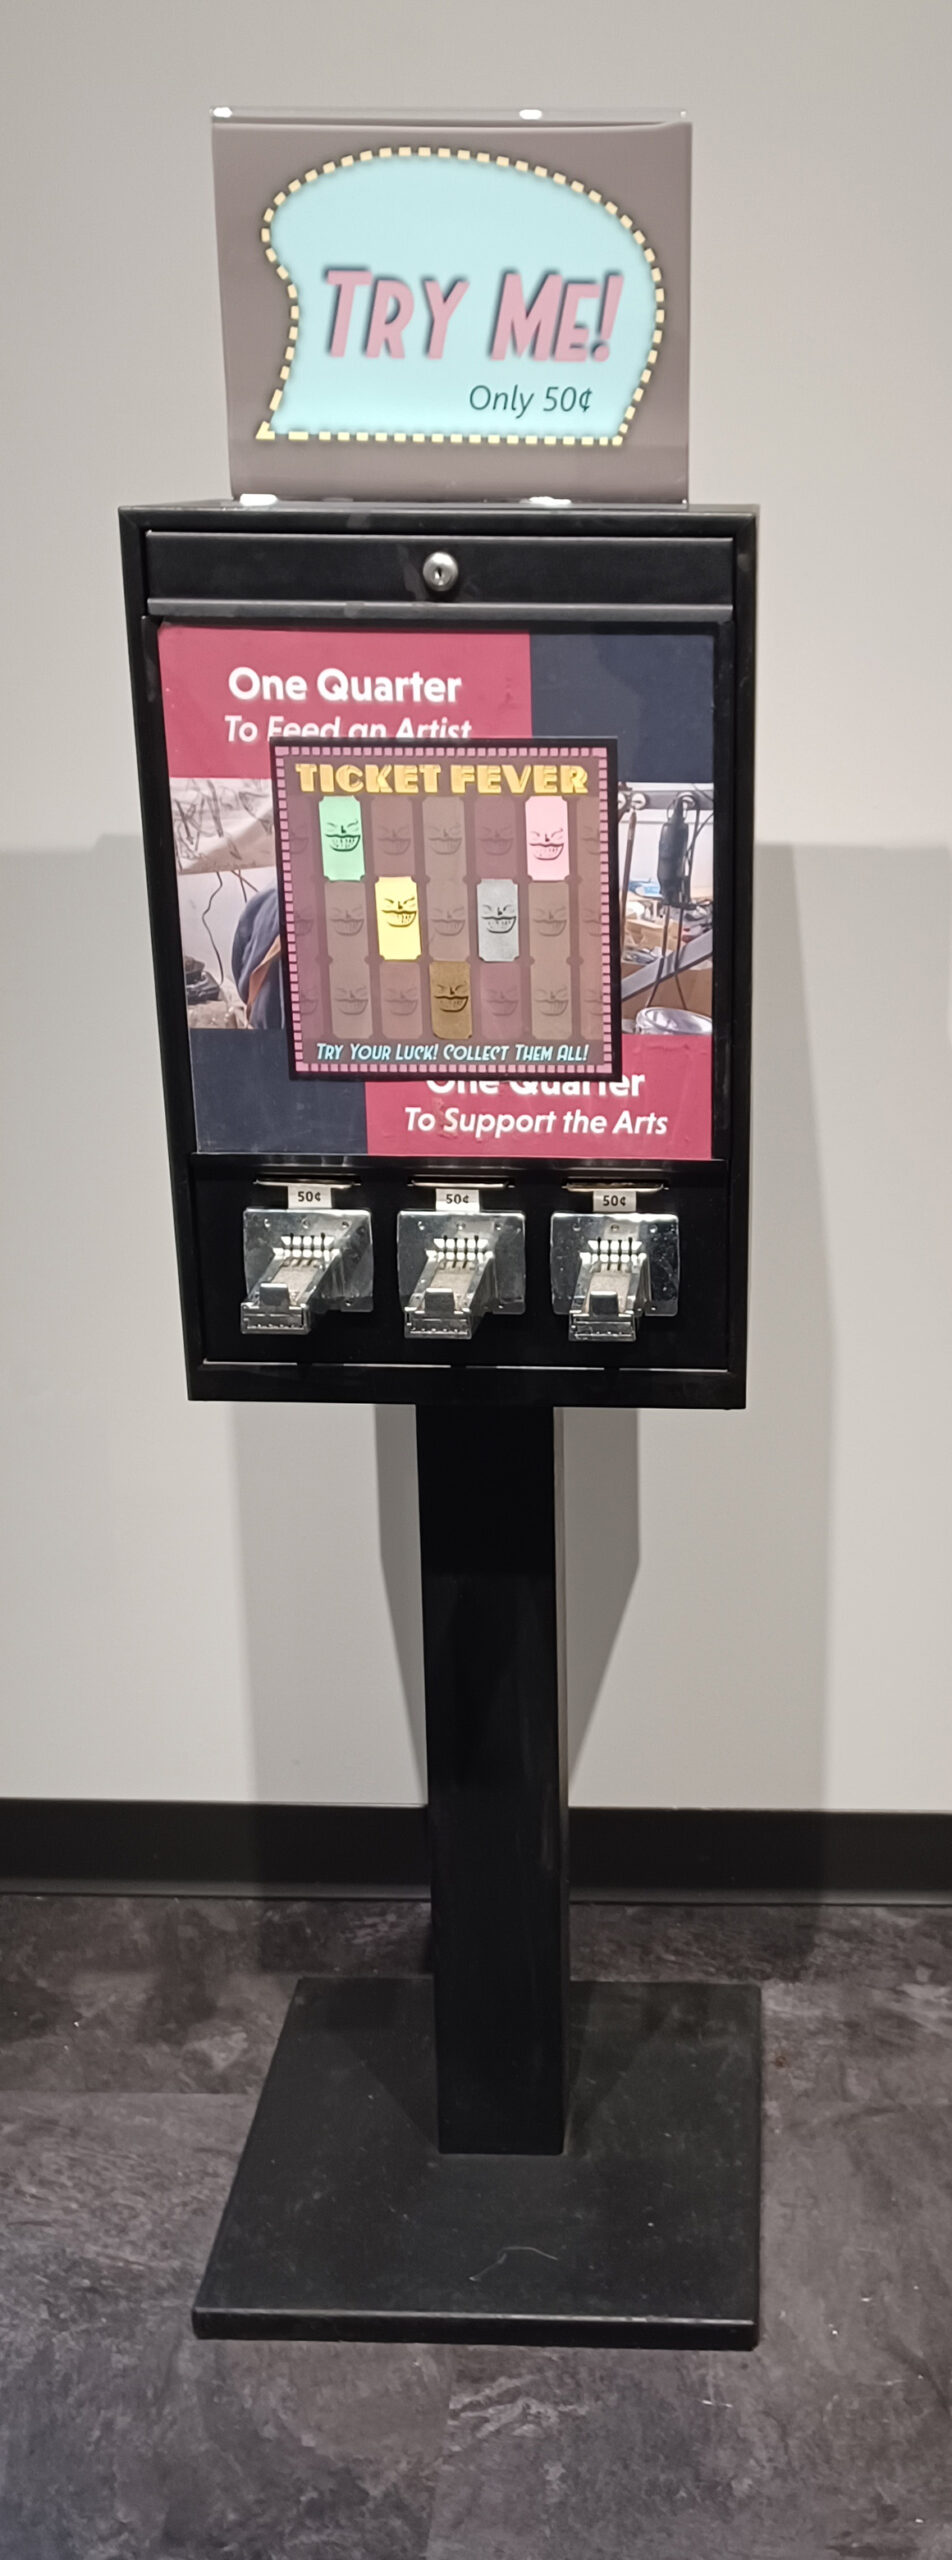 Sculpture of vending machine that vends artist made tickets